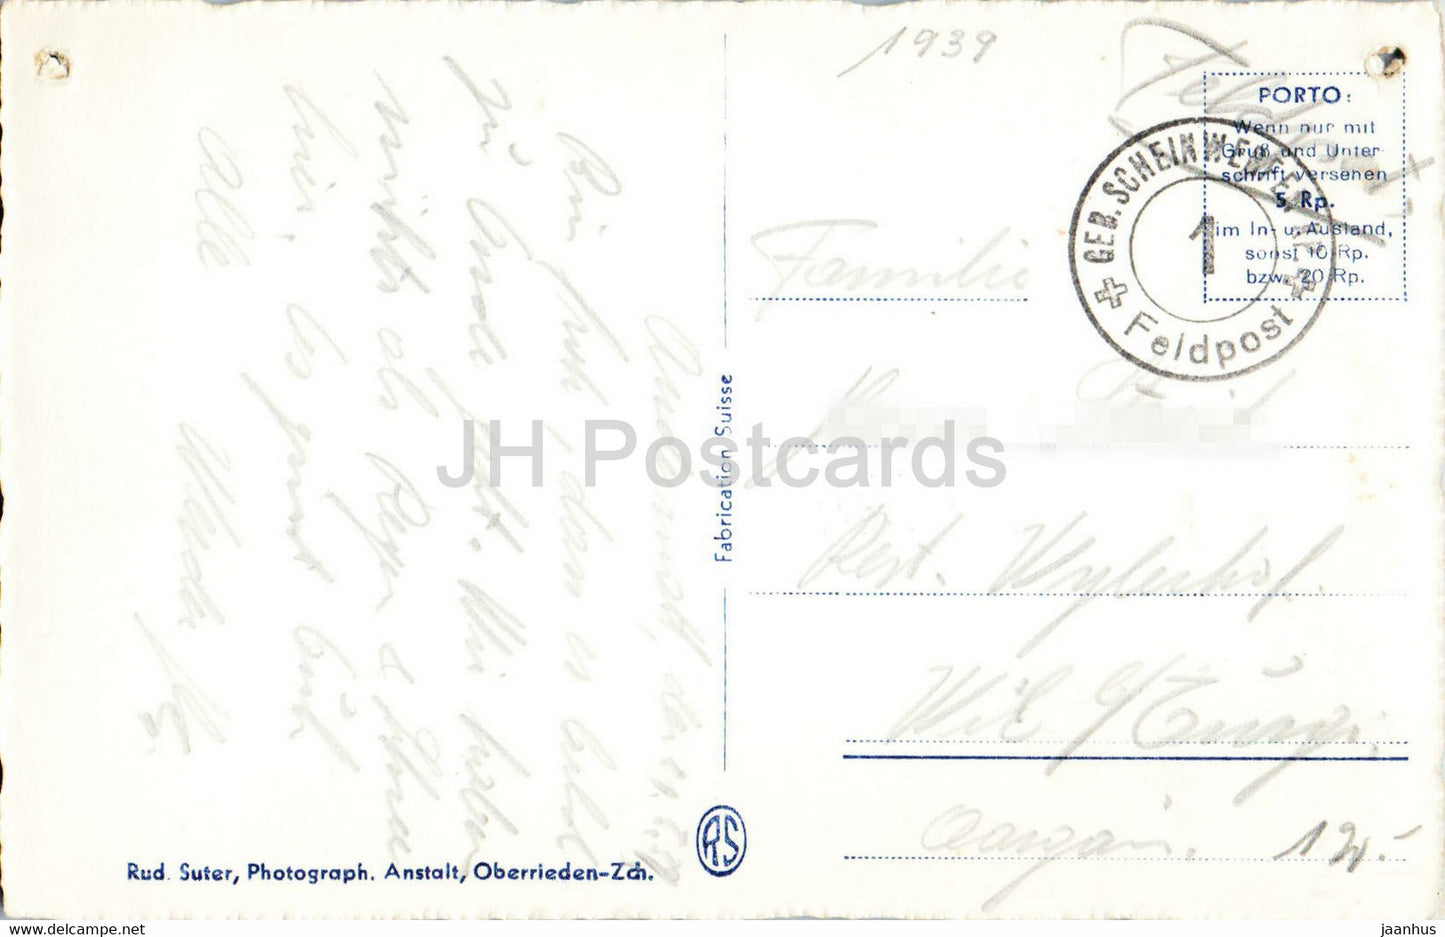 Andermatt - 908 - Feldpost - Militärpost - alte Postkarte - 1939 - Schweiz - unbenutzt